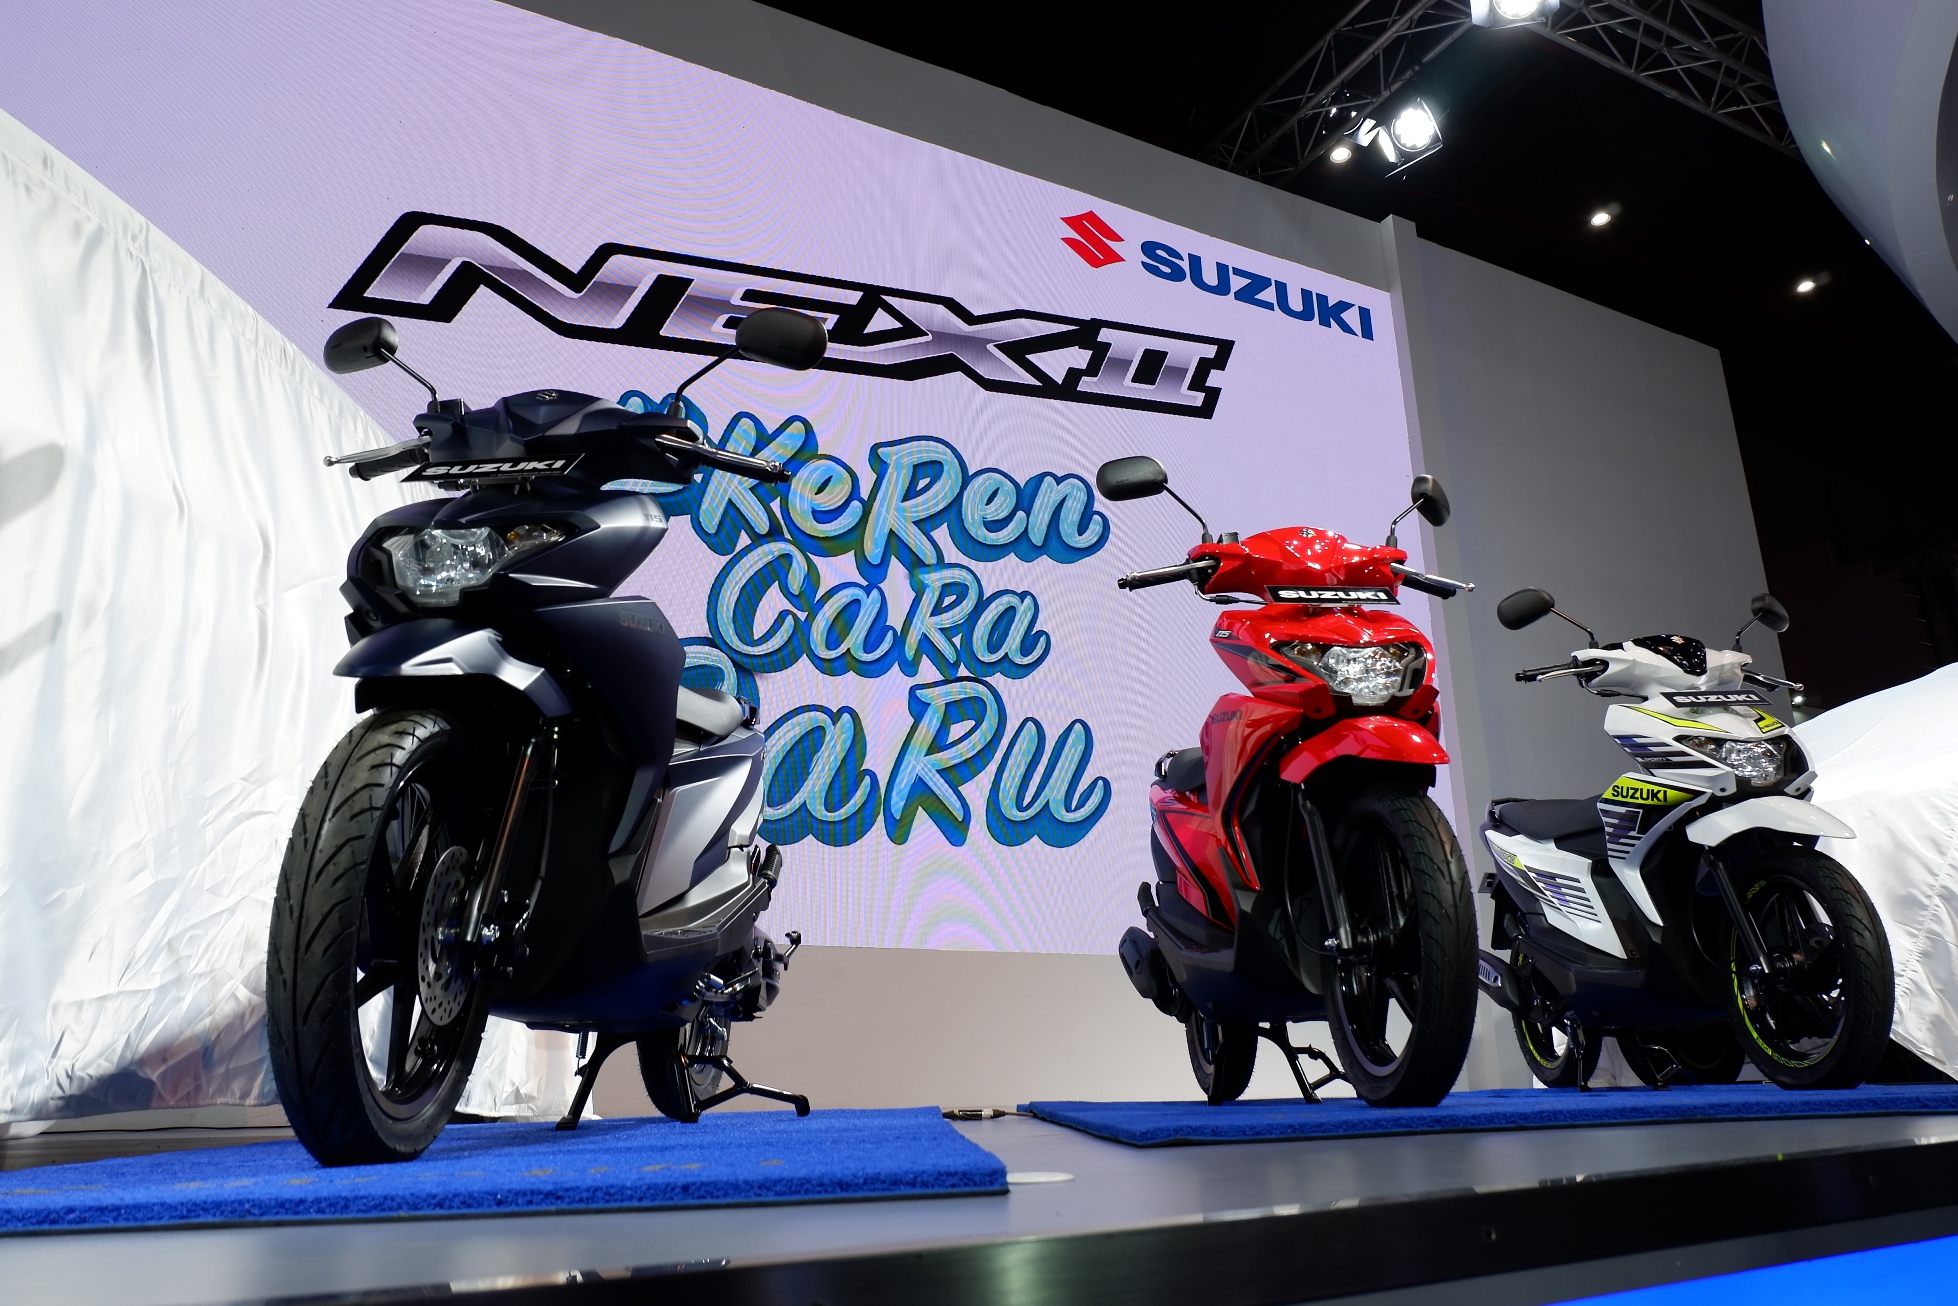 Penampakan motor Suzuki Nex II dan Variannya tahun 2018